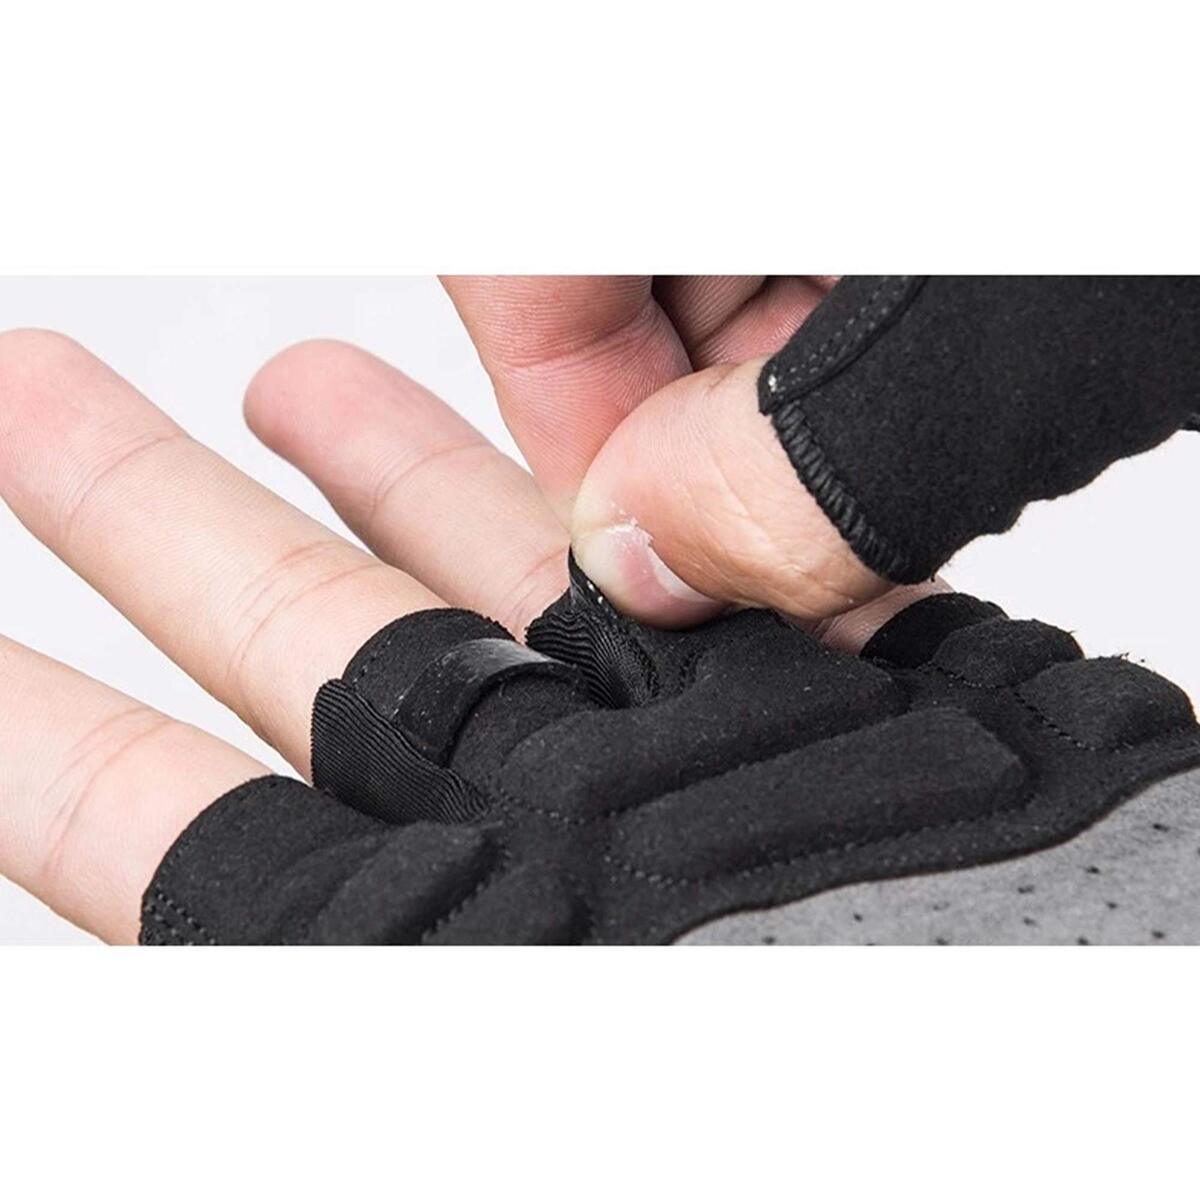 ROCKBROS Half Finger Cycling Gloves S159BGR Medium